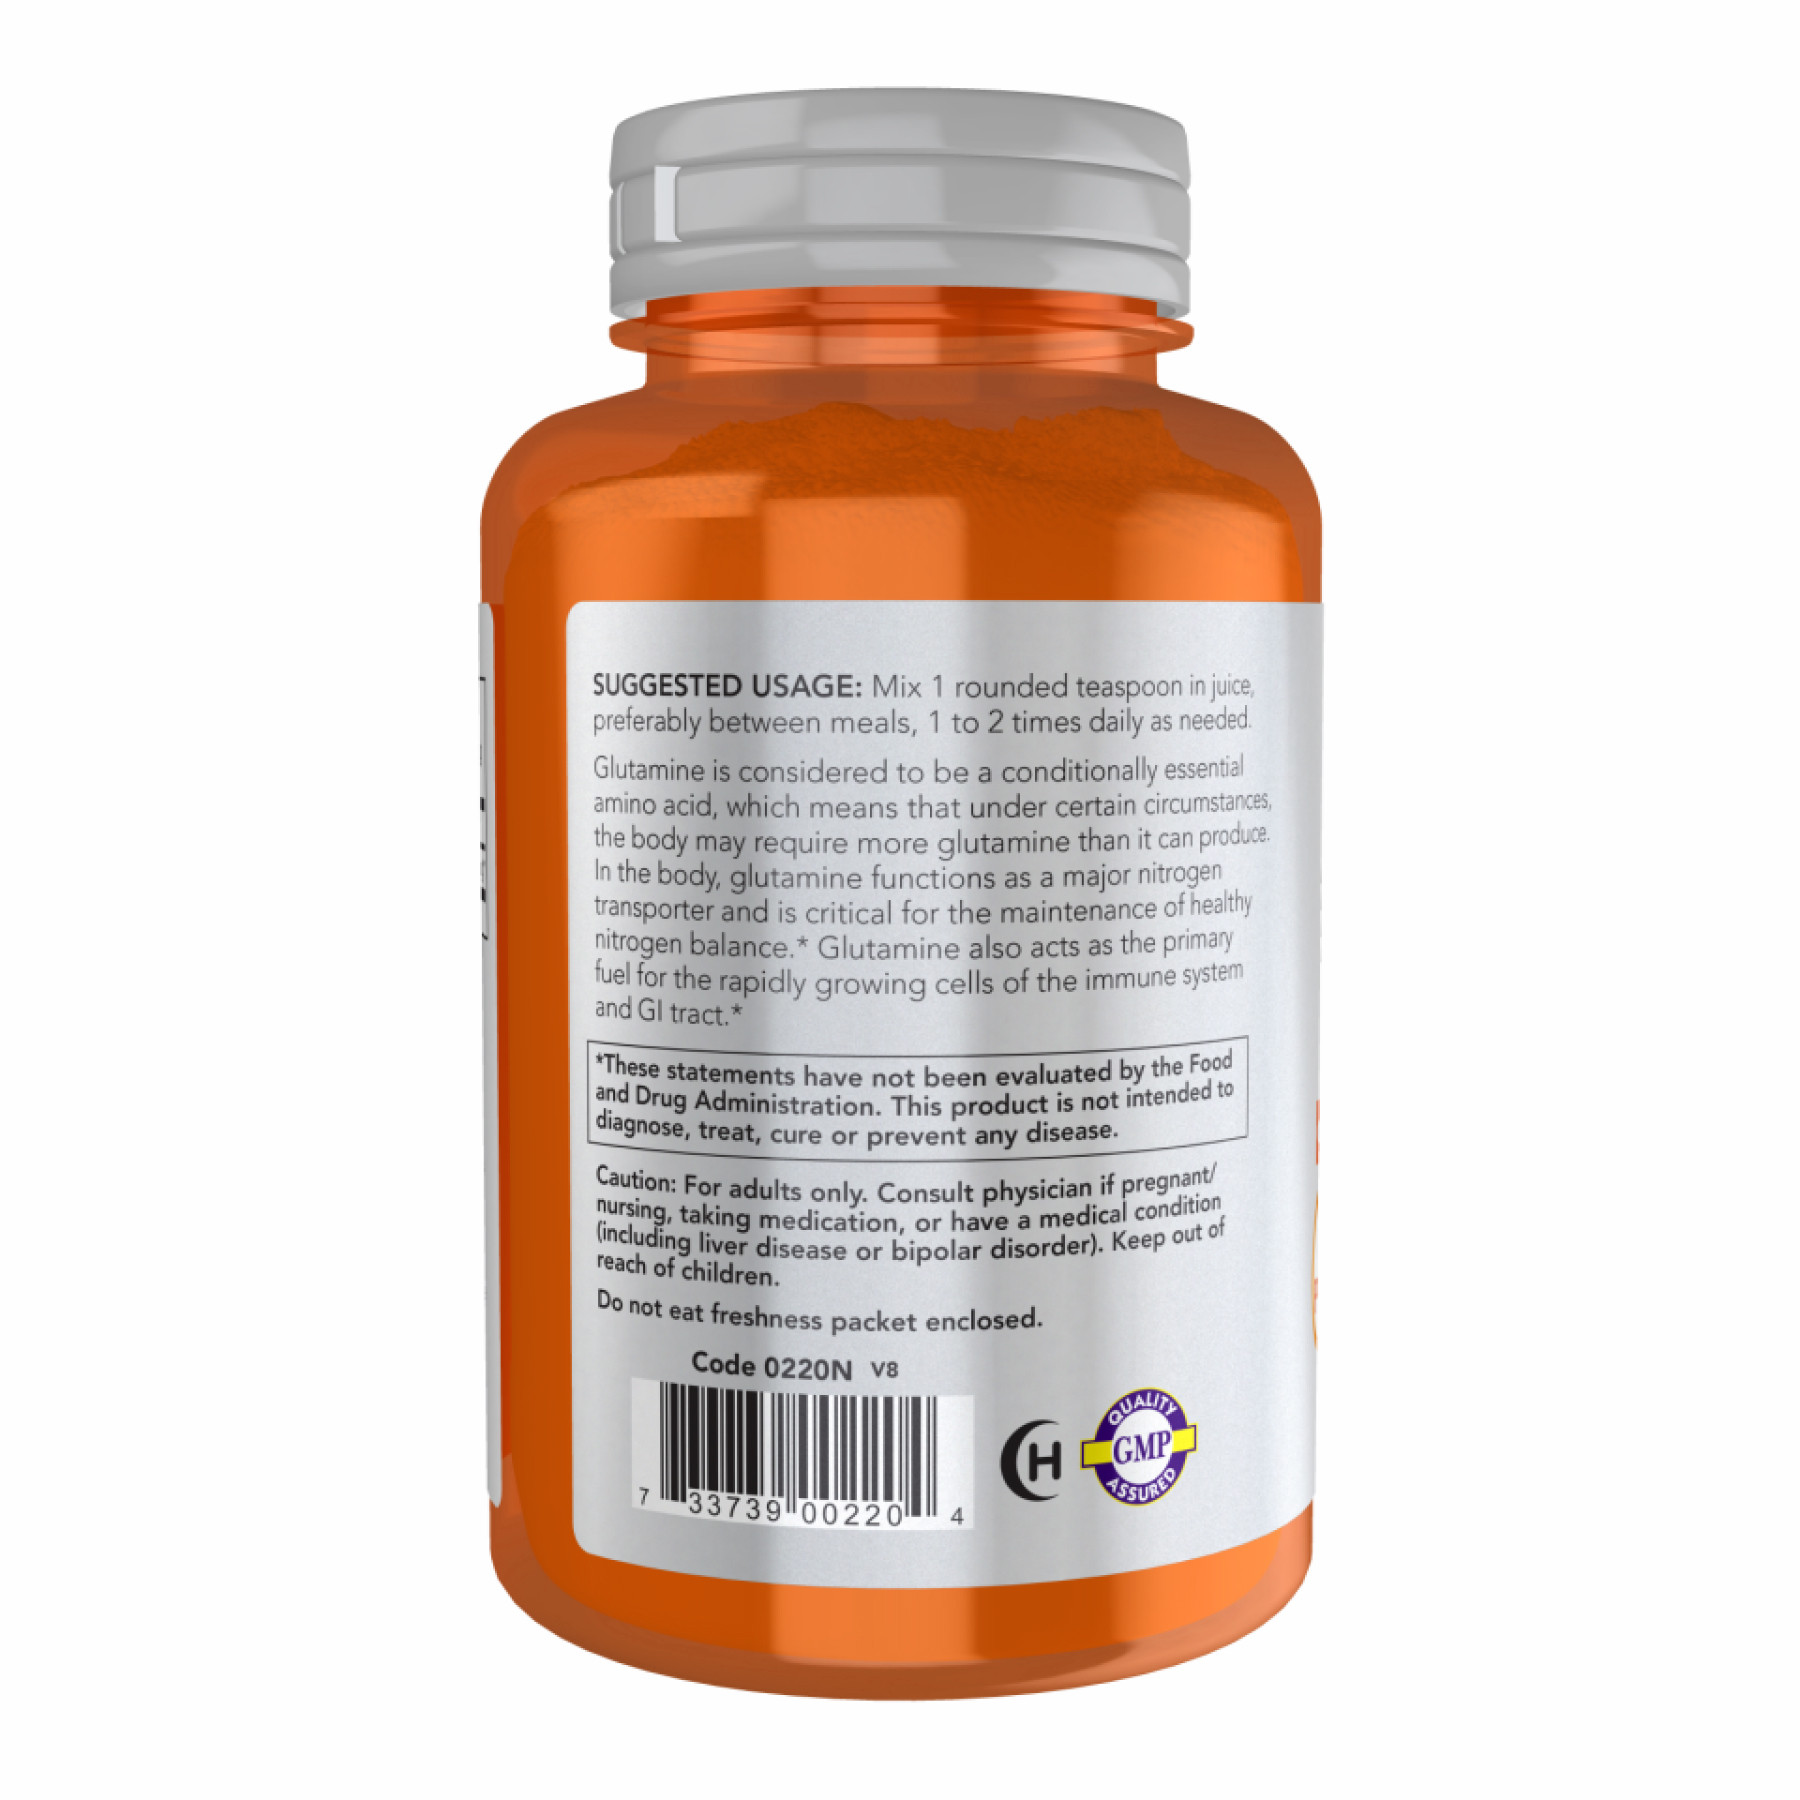 Порошок L-Glutamine Powder - 454g 2022-10-2310